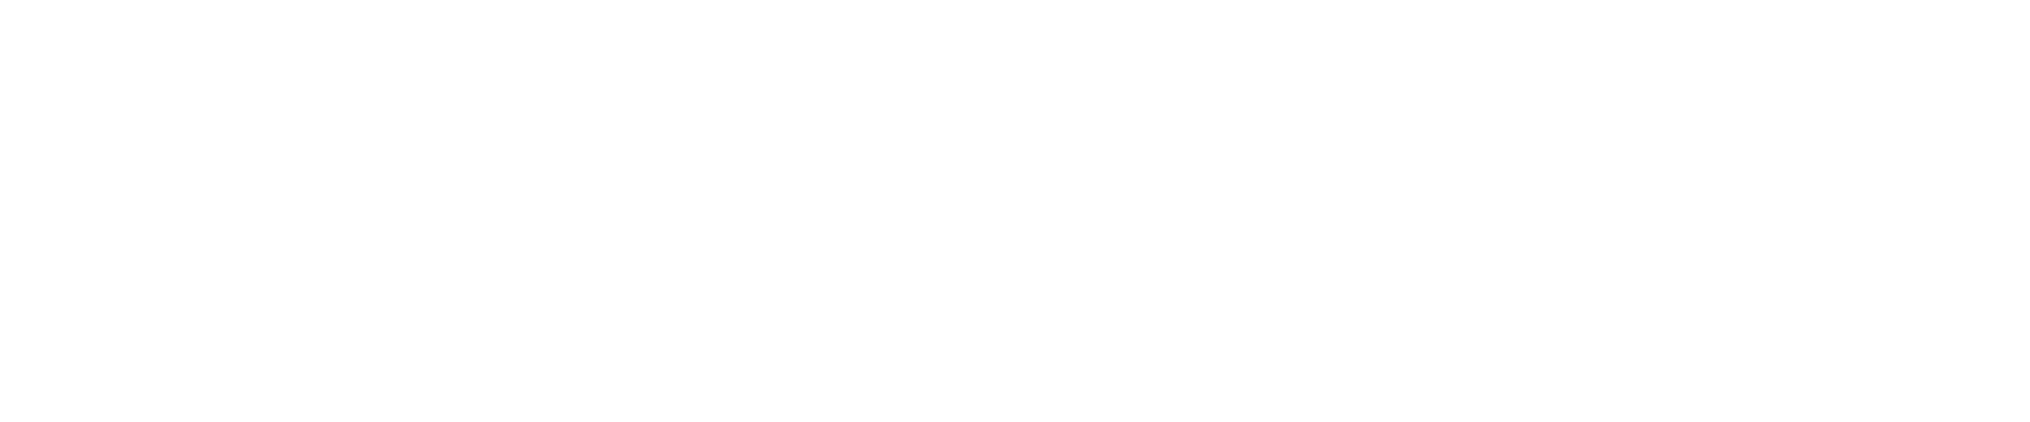 lakanto logo